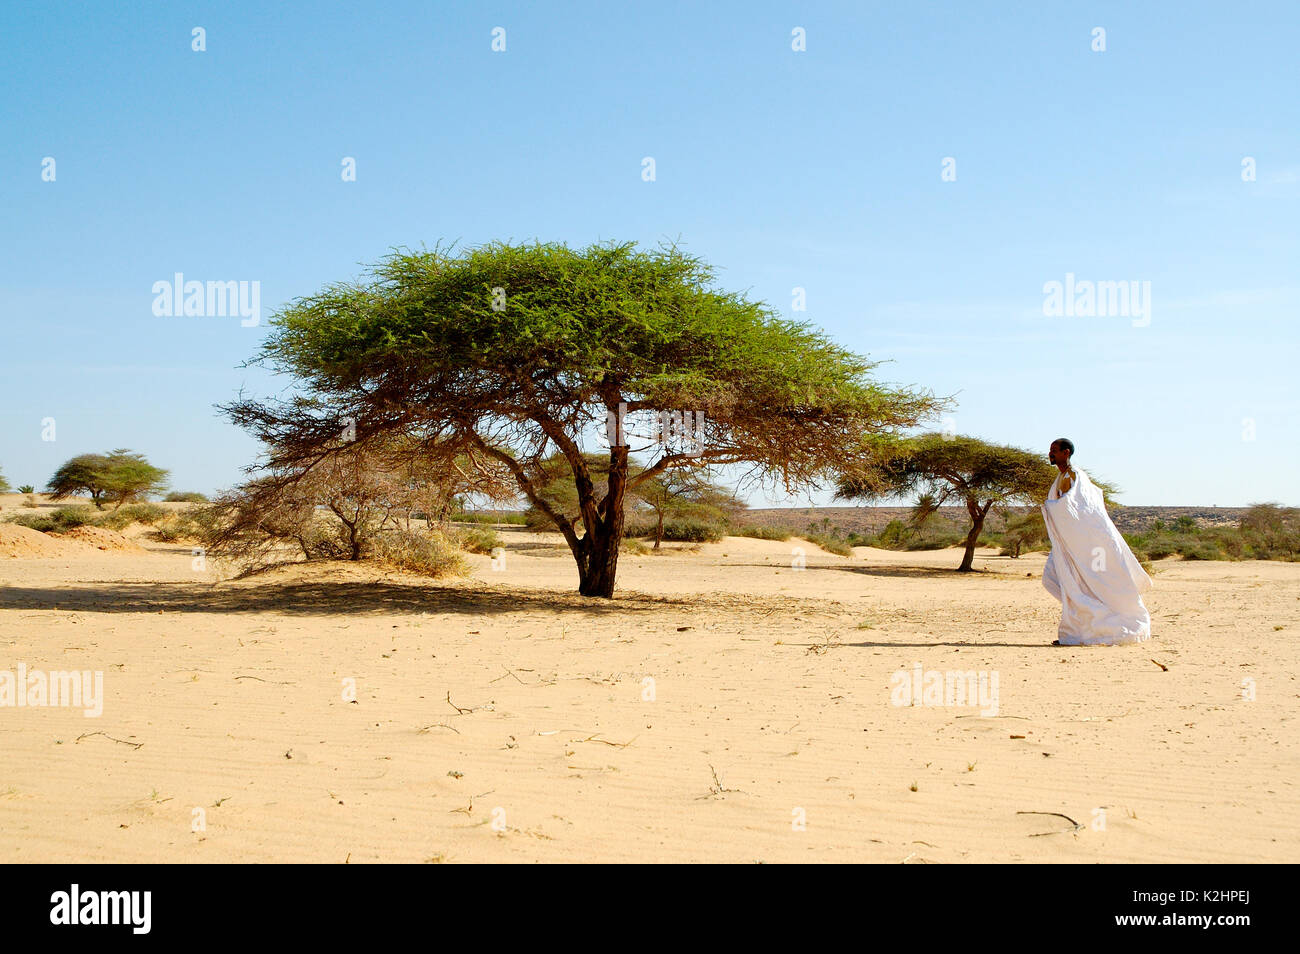 Acacia tree rich in Gum arabic, also known as acacia gum. Adrar region, Mauritania Stock Photo